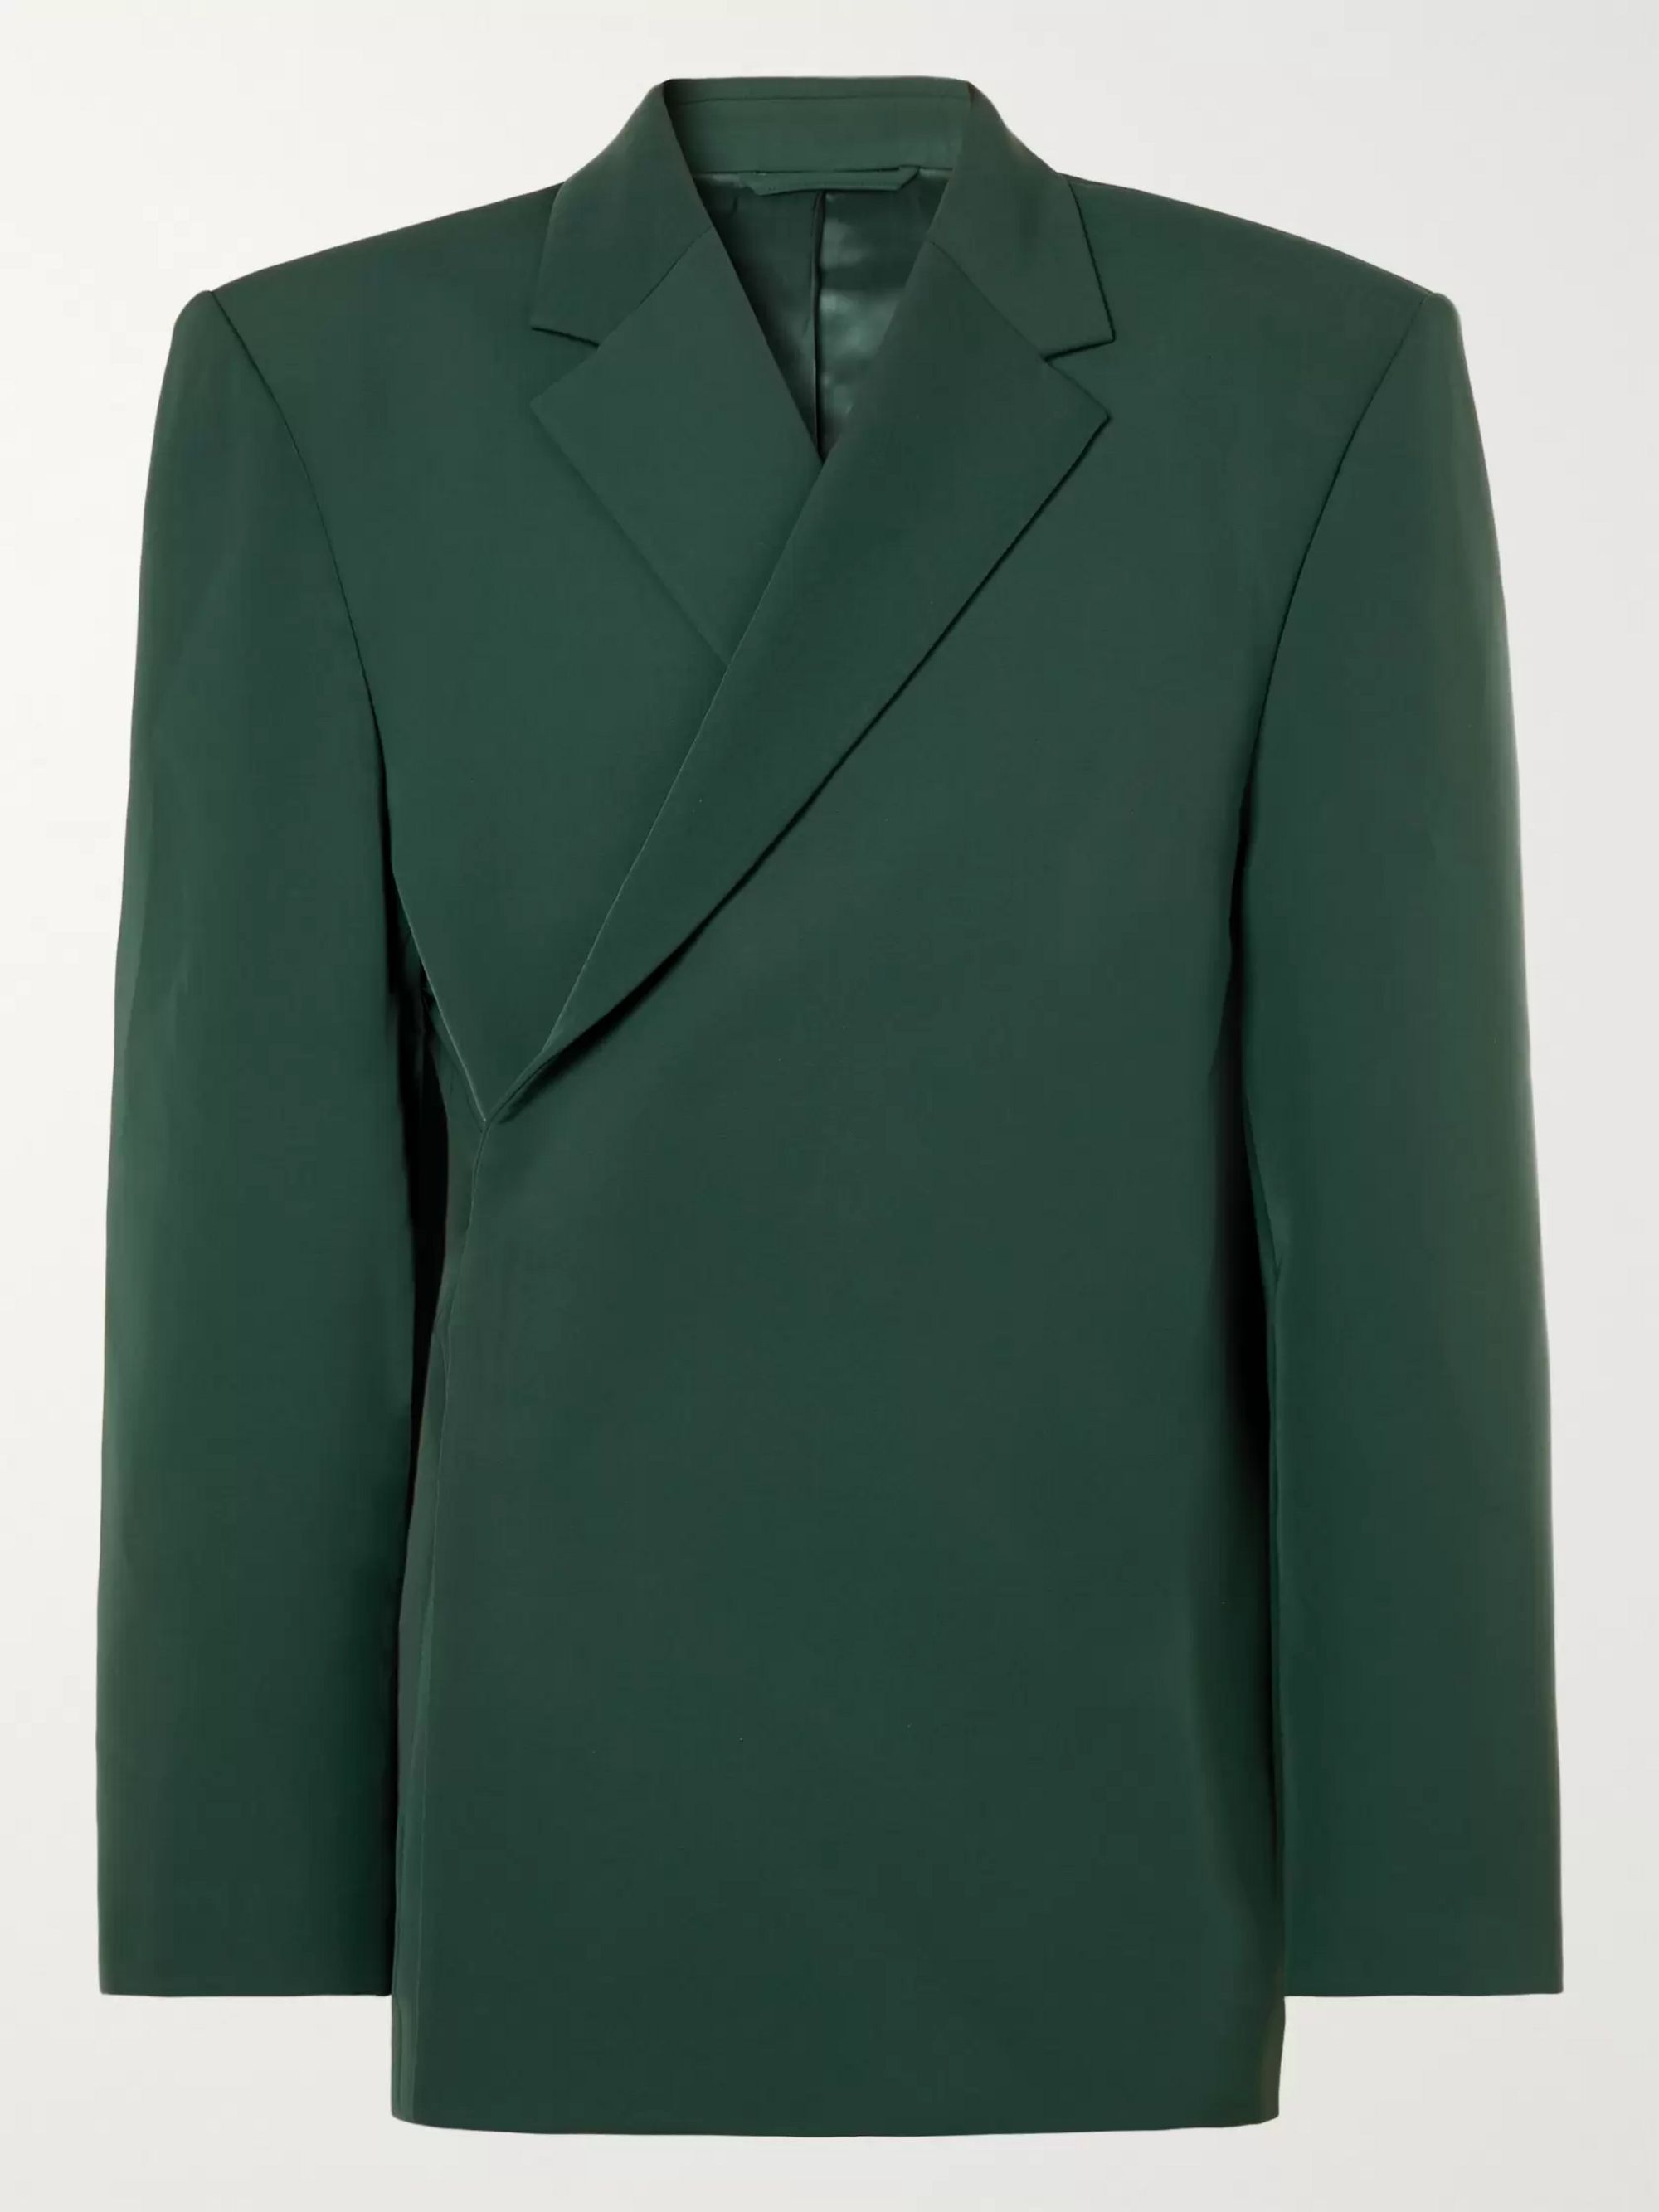 balenciaga green jacket